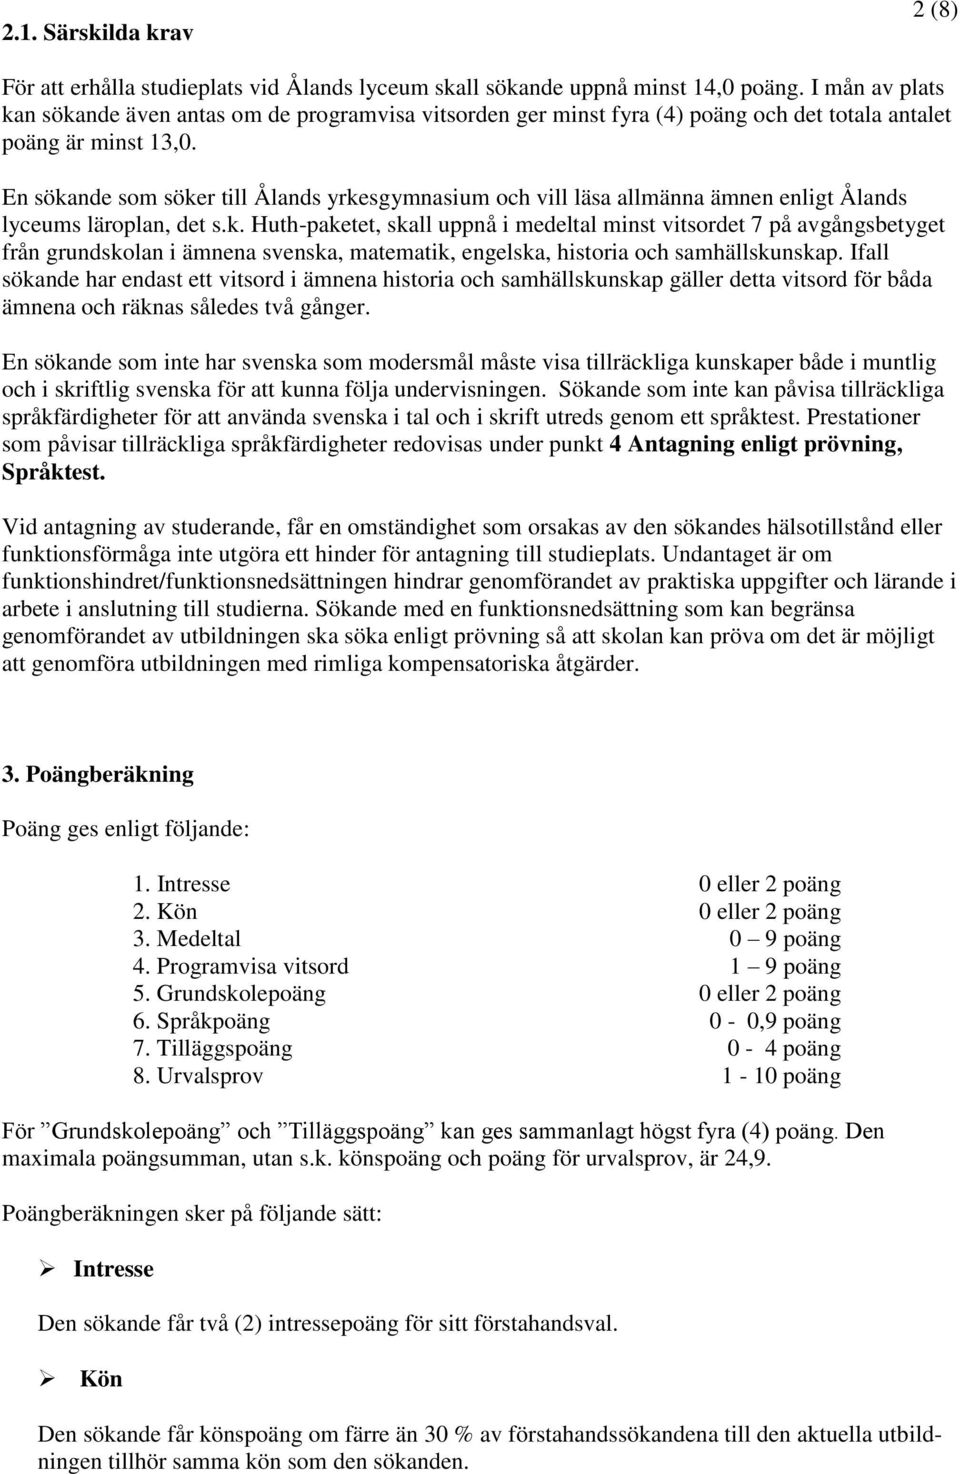 En sökande som söker till Ålands yrkesgymnasium och vill läsa allmänna ämnen enligt Ålands lyceums läroplan, det s.k. Huth-paketet, skall uppnå i medeltal minst vitsordet 7 på avgångsbetyget från grundskolan i ämnena svenska, matematik, engelska, historia och samhällskunskap.